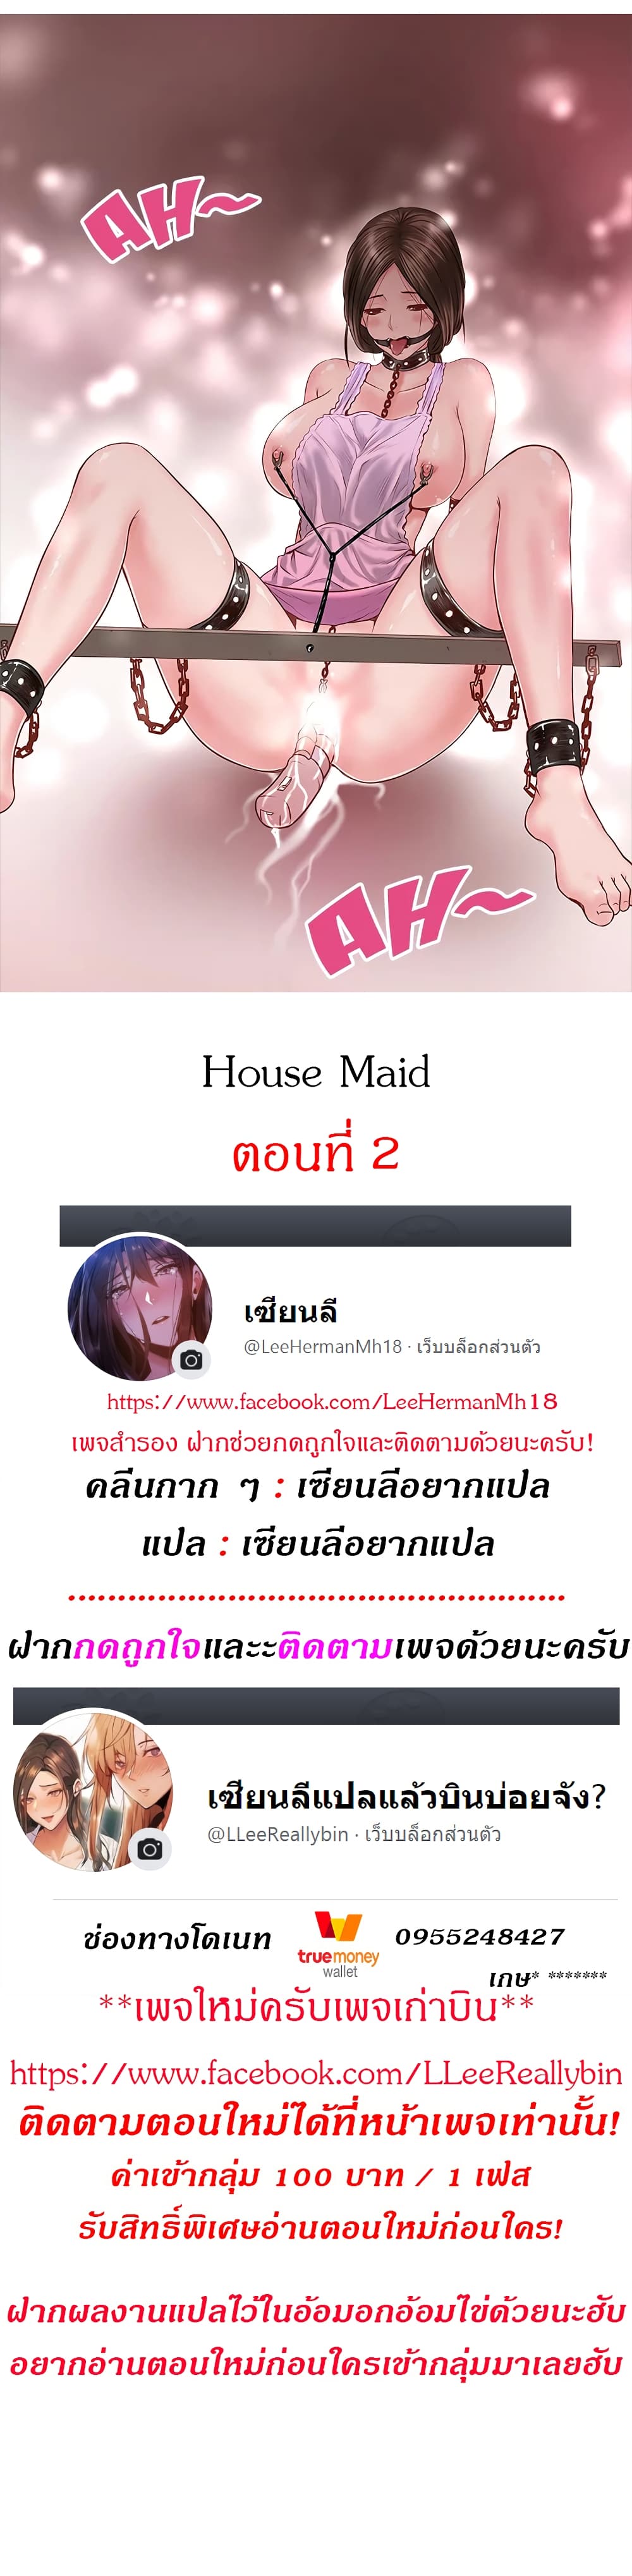 House Maid 2-2